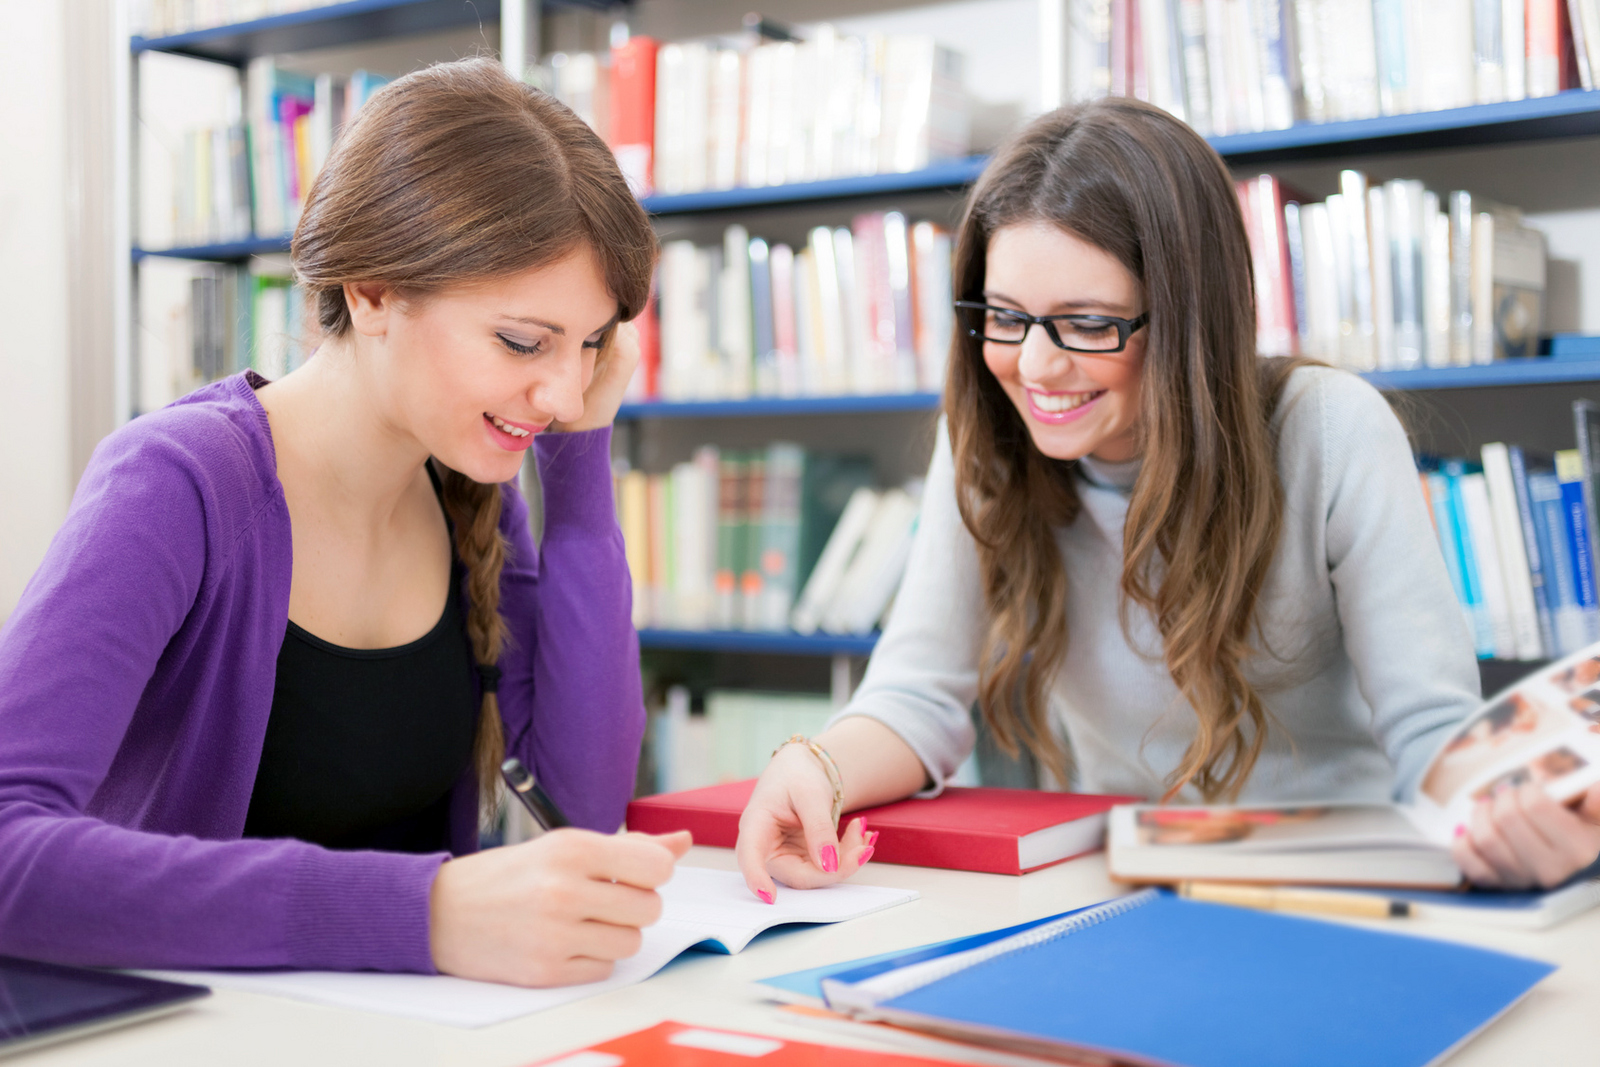 Zwei Studentinnen sitzen vor einem Bücherregal an einem Tisch und lernen.